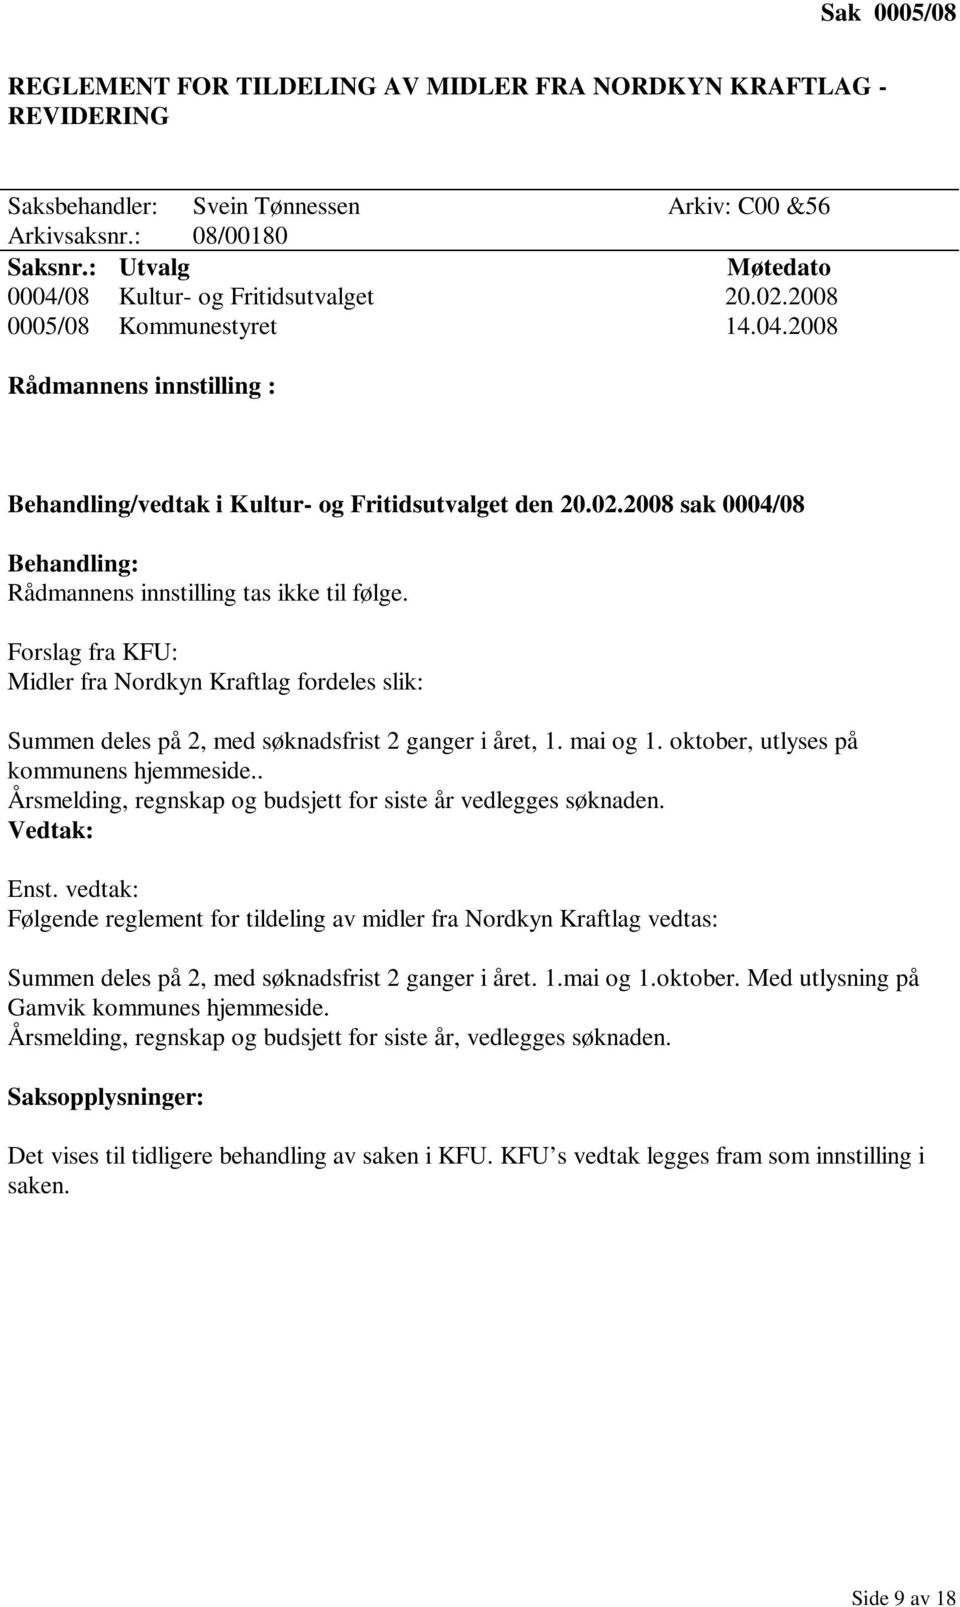 Forslag fra KFU: Midler fra Nordkyn Kraftlag fordeles slik: Summen deles på 2, med søknadsfrist 2 ganger i året, 1. mai og 1. oktober, utlyses på kommunens hjemmeside.